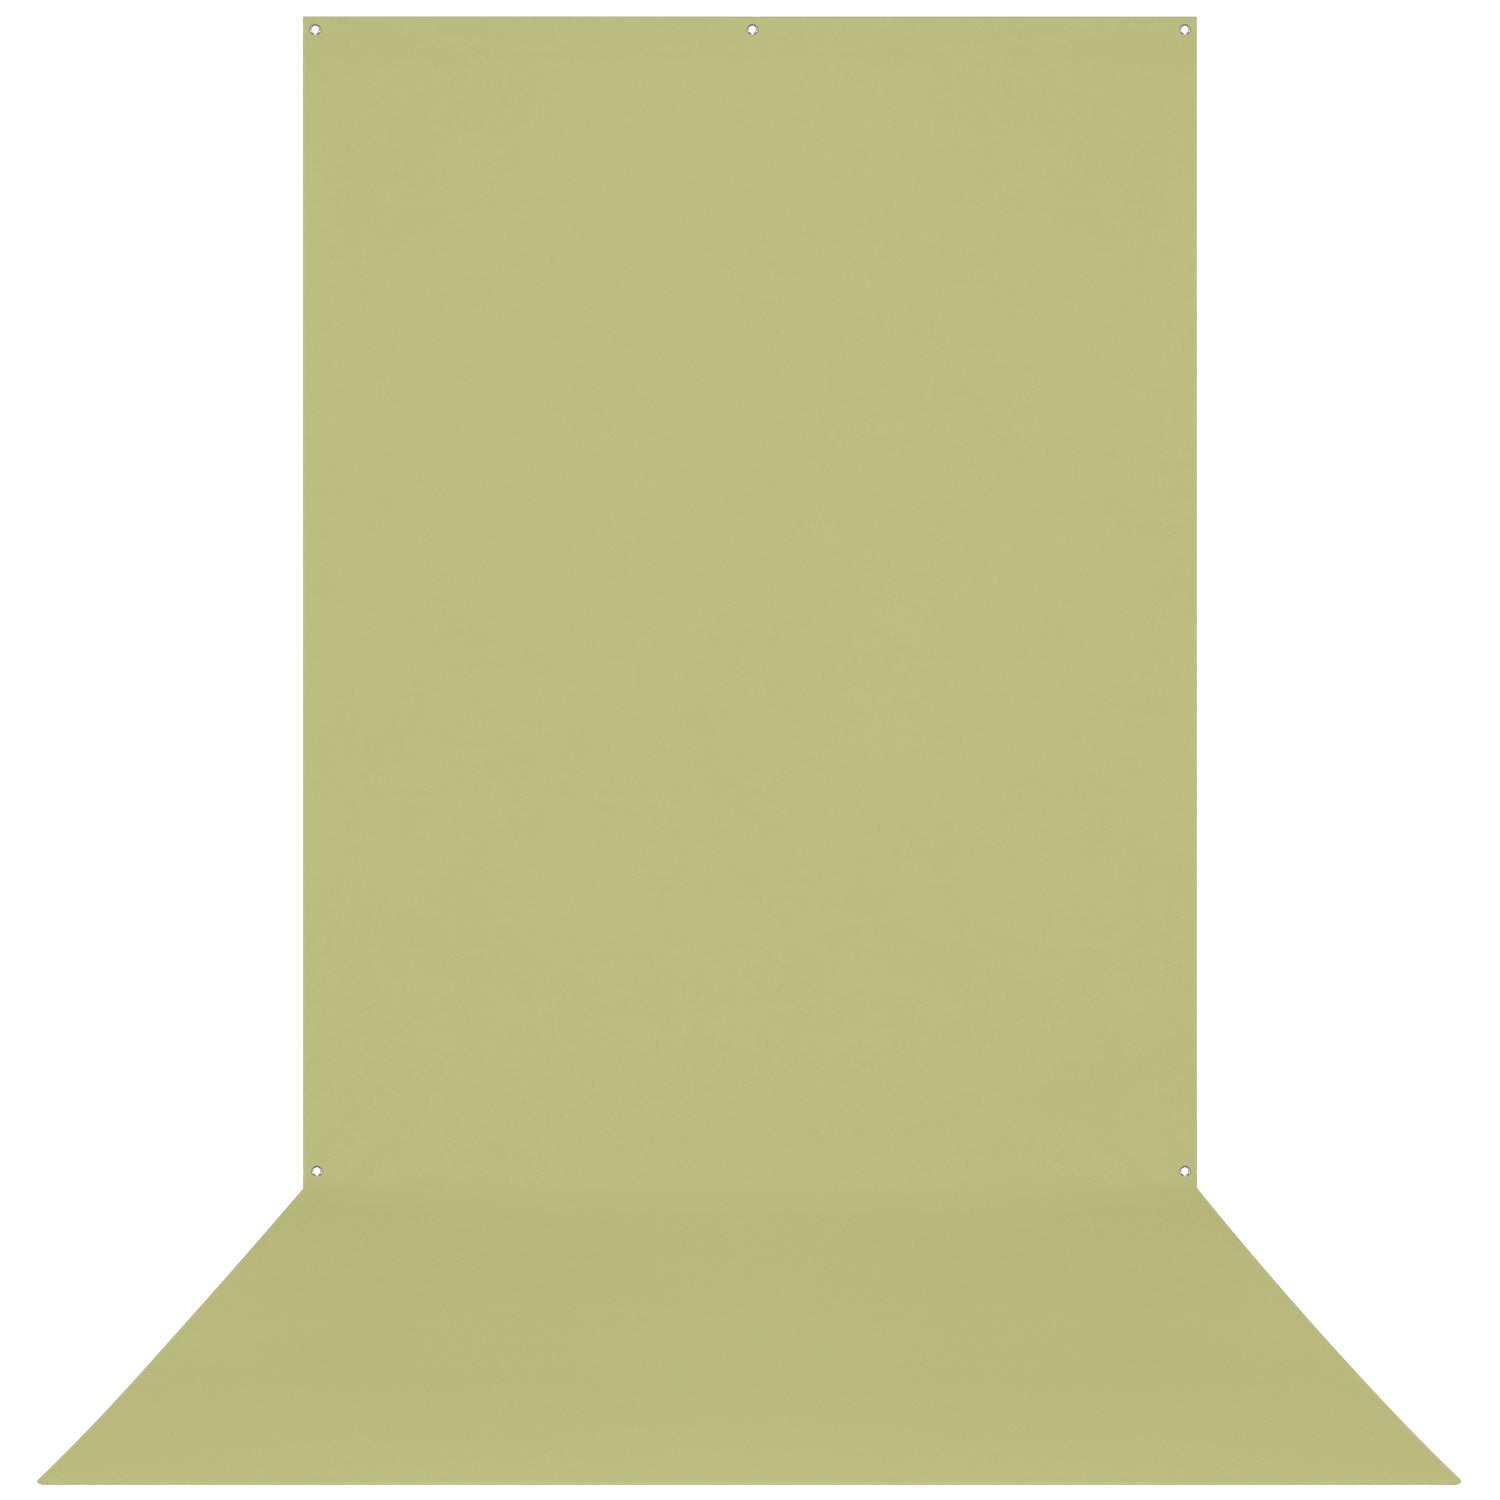 X-Drop Wrinkle-Resistant Backdrop - Light Moss Green (5' x 12')